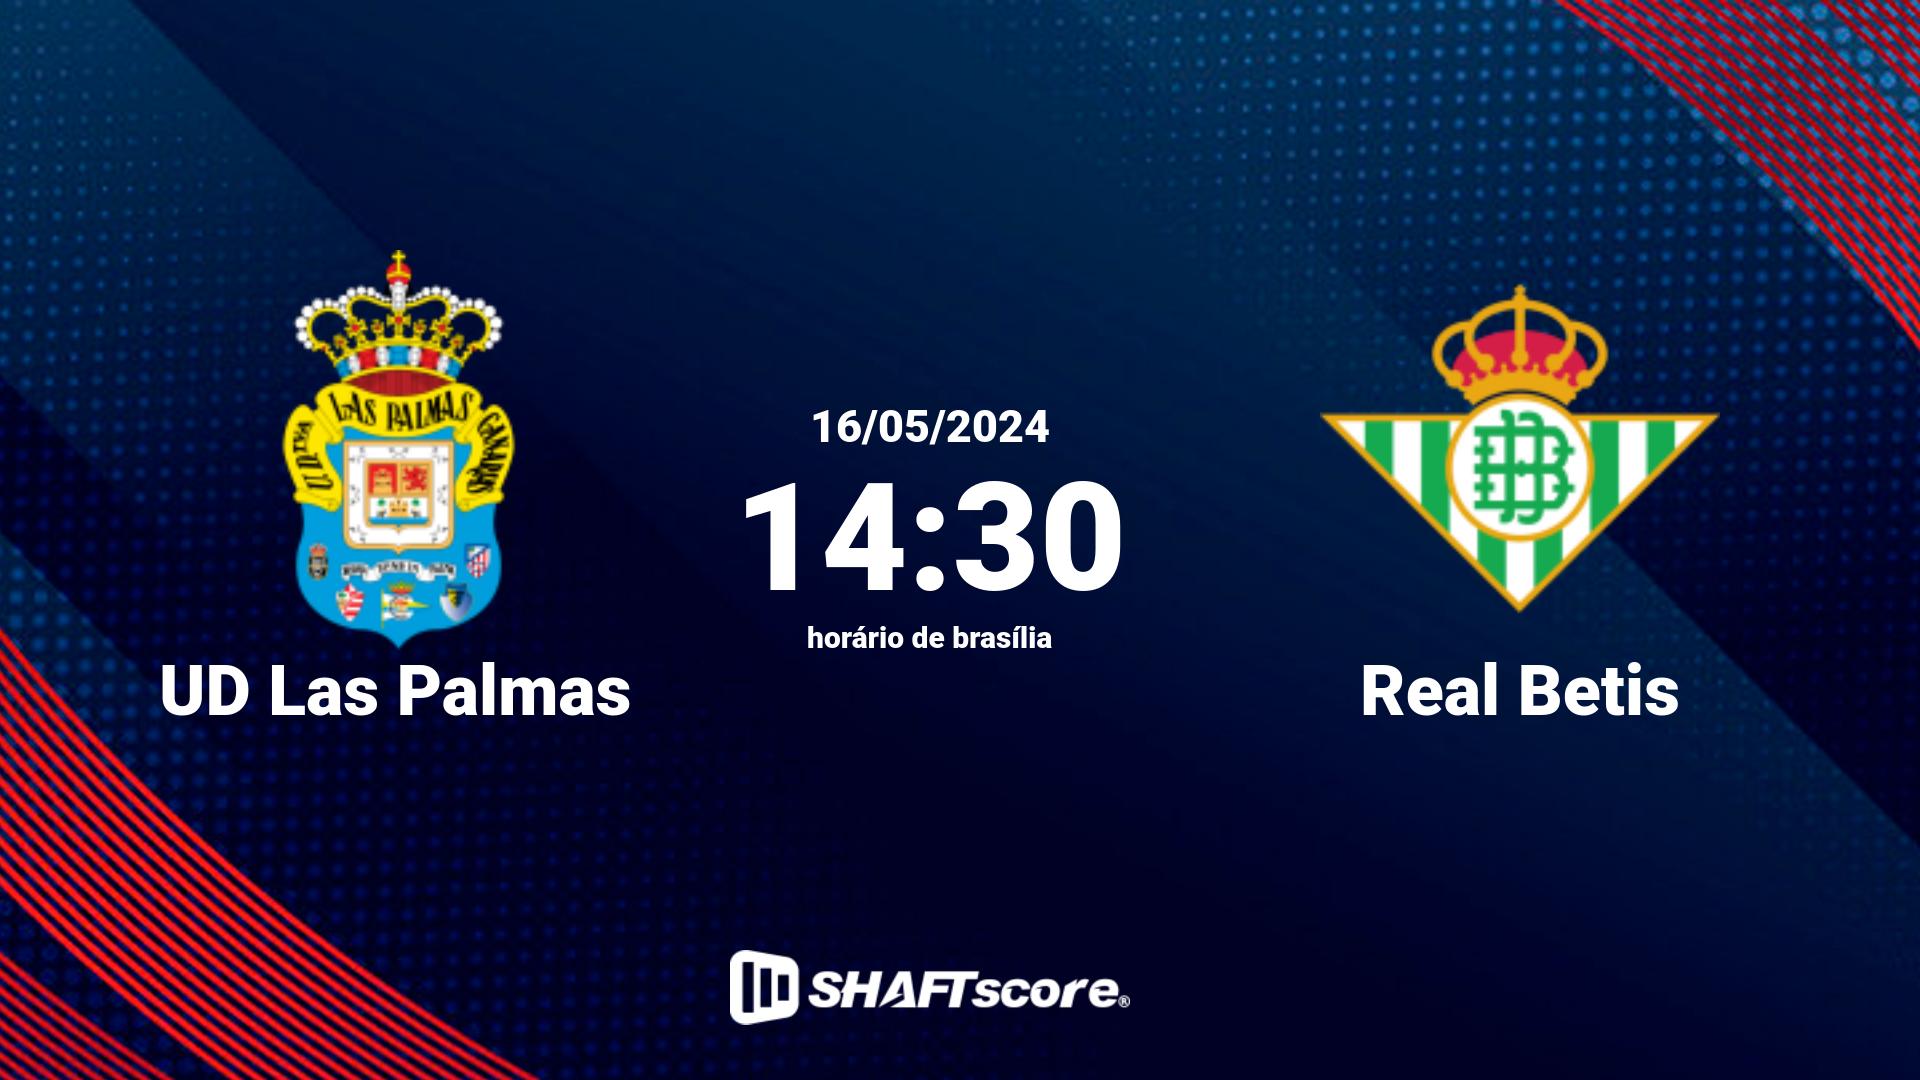 Estatísticas do jogo UD Las Palmas vs Real Betis 16.05 14:30